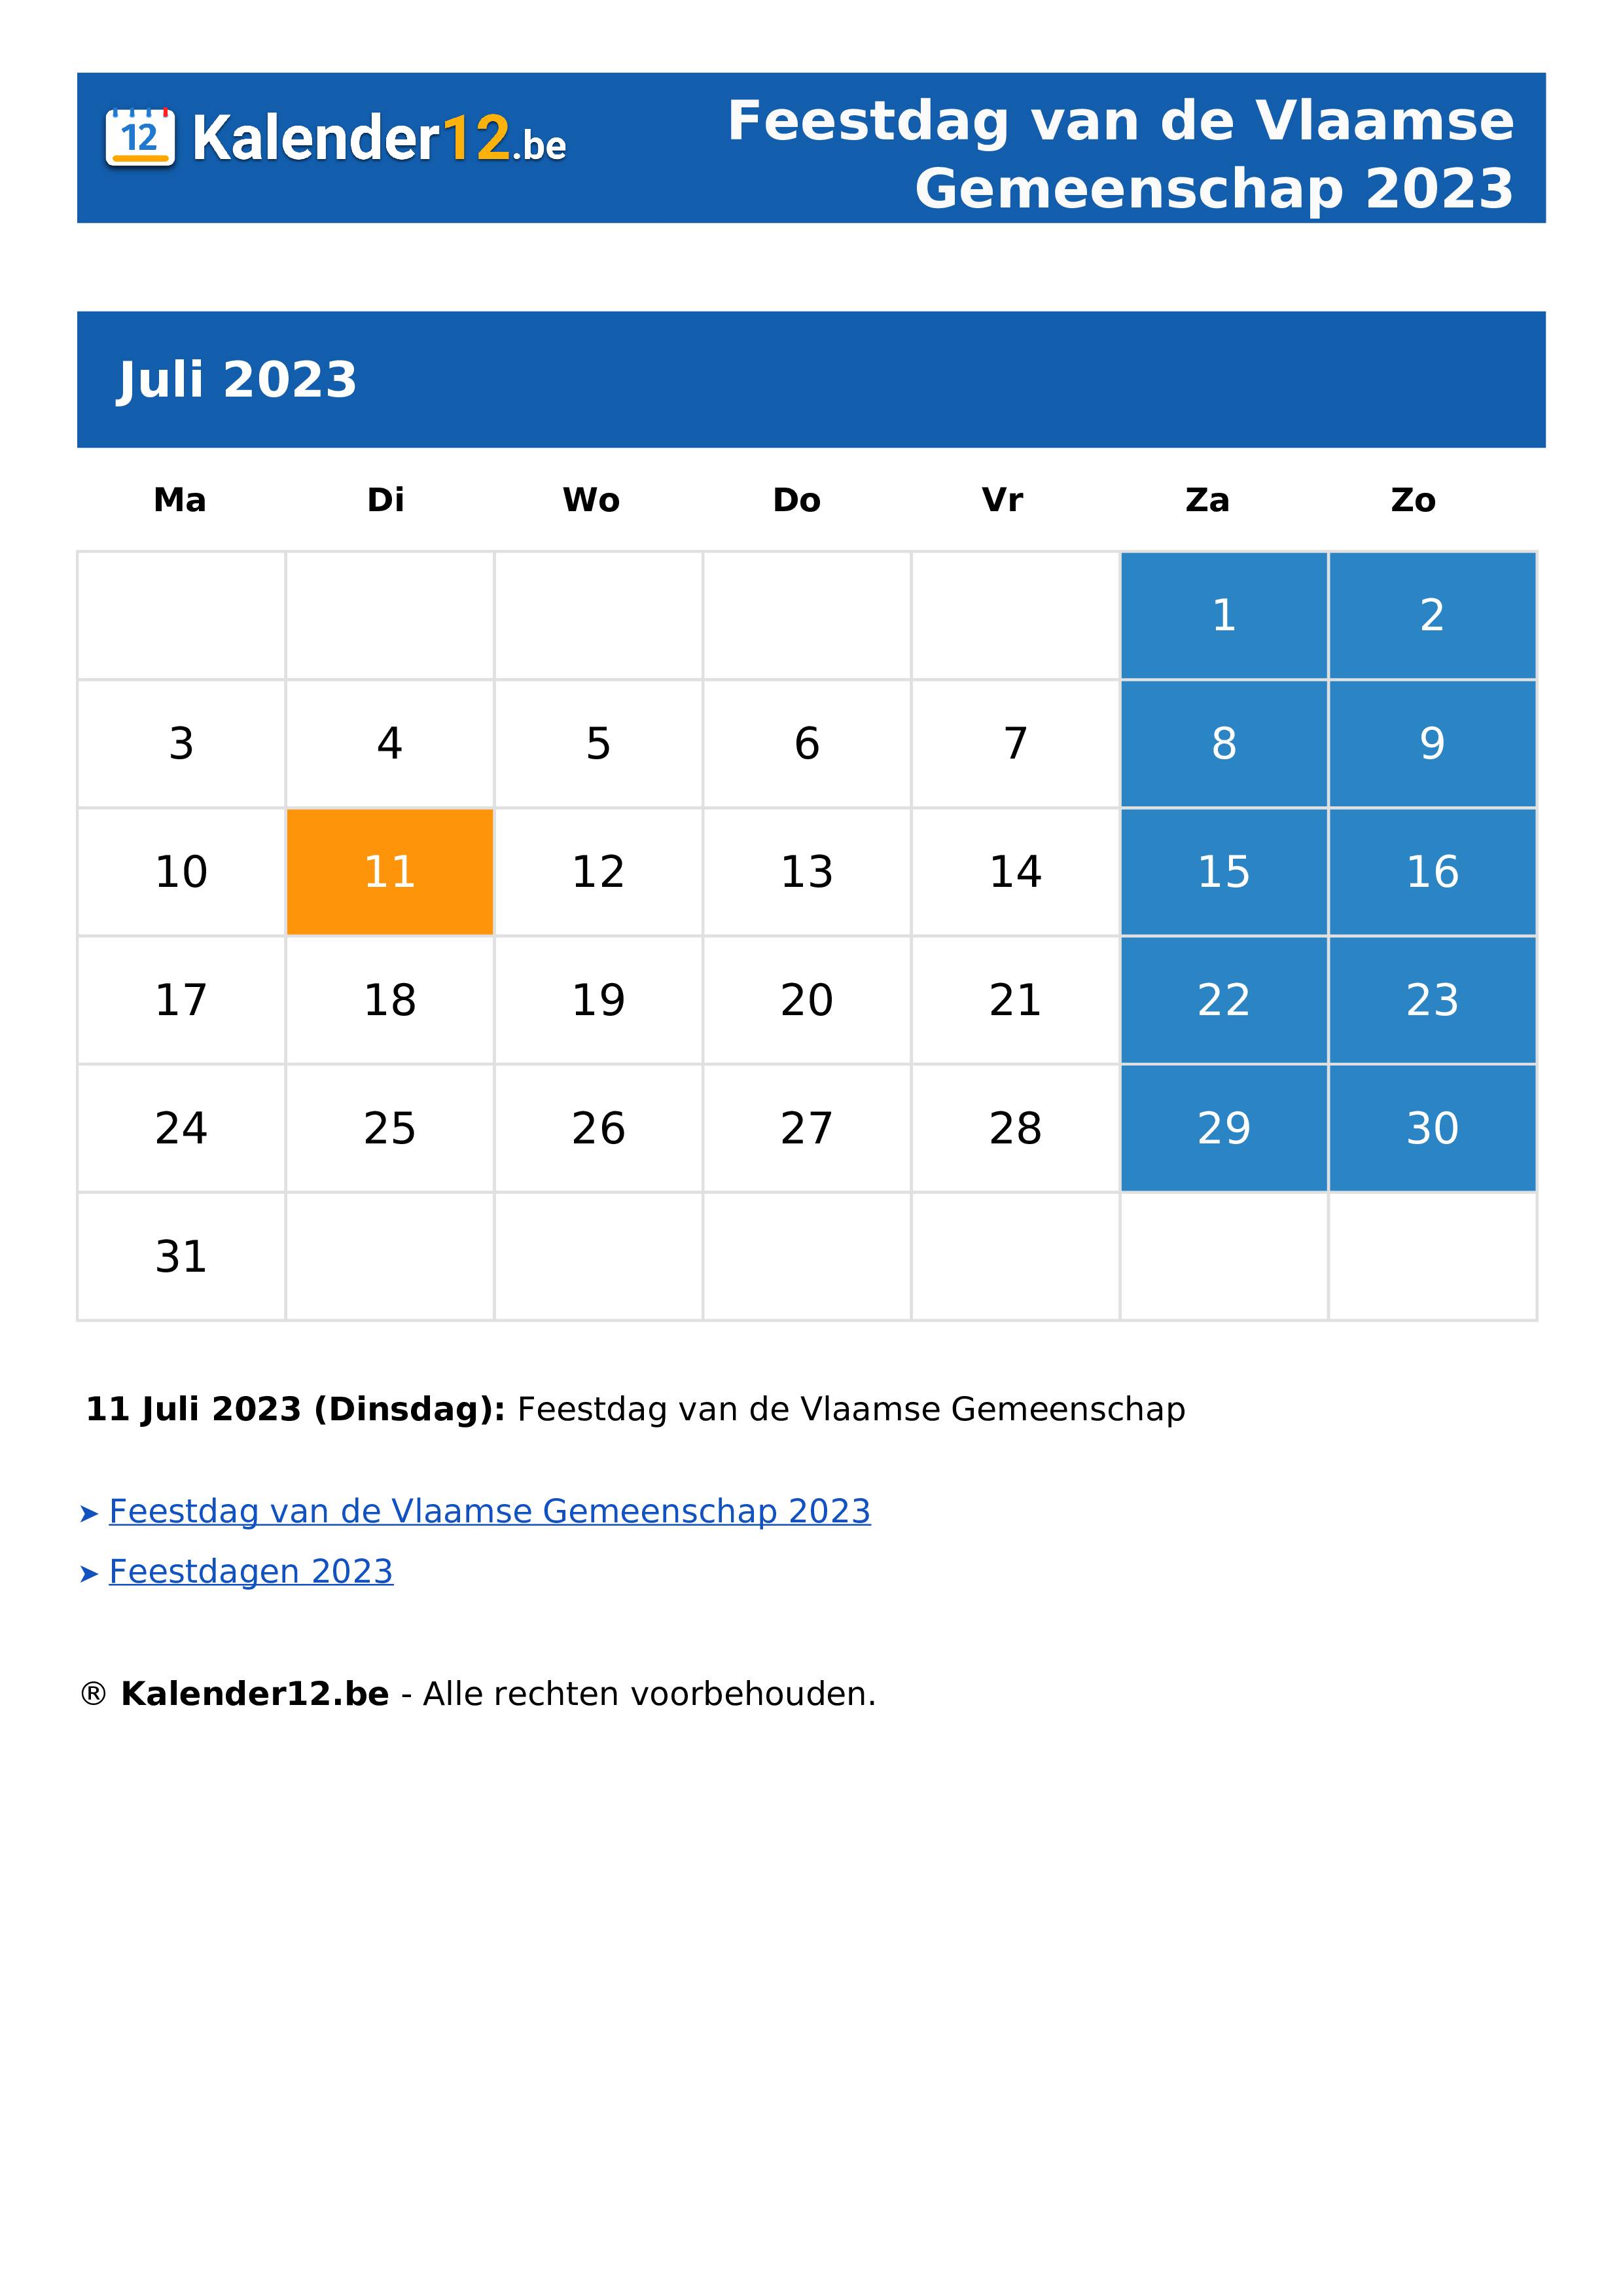 Feestdag van de Vlaamse Gemeenschap 2023